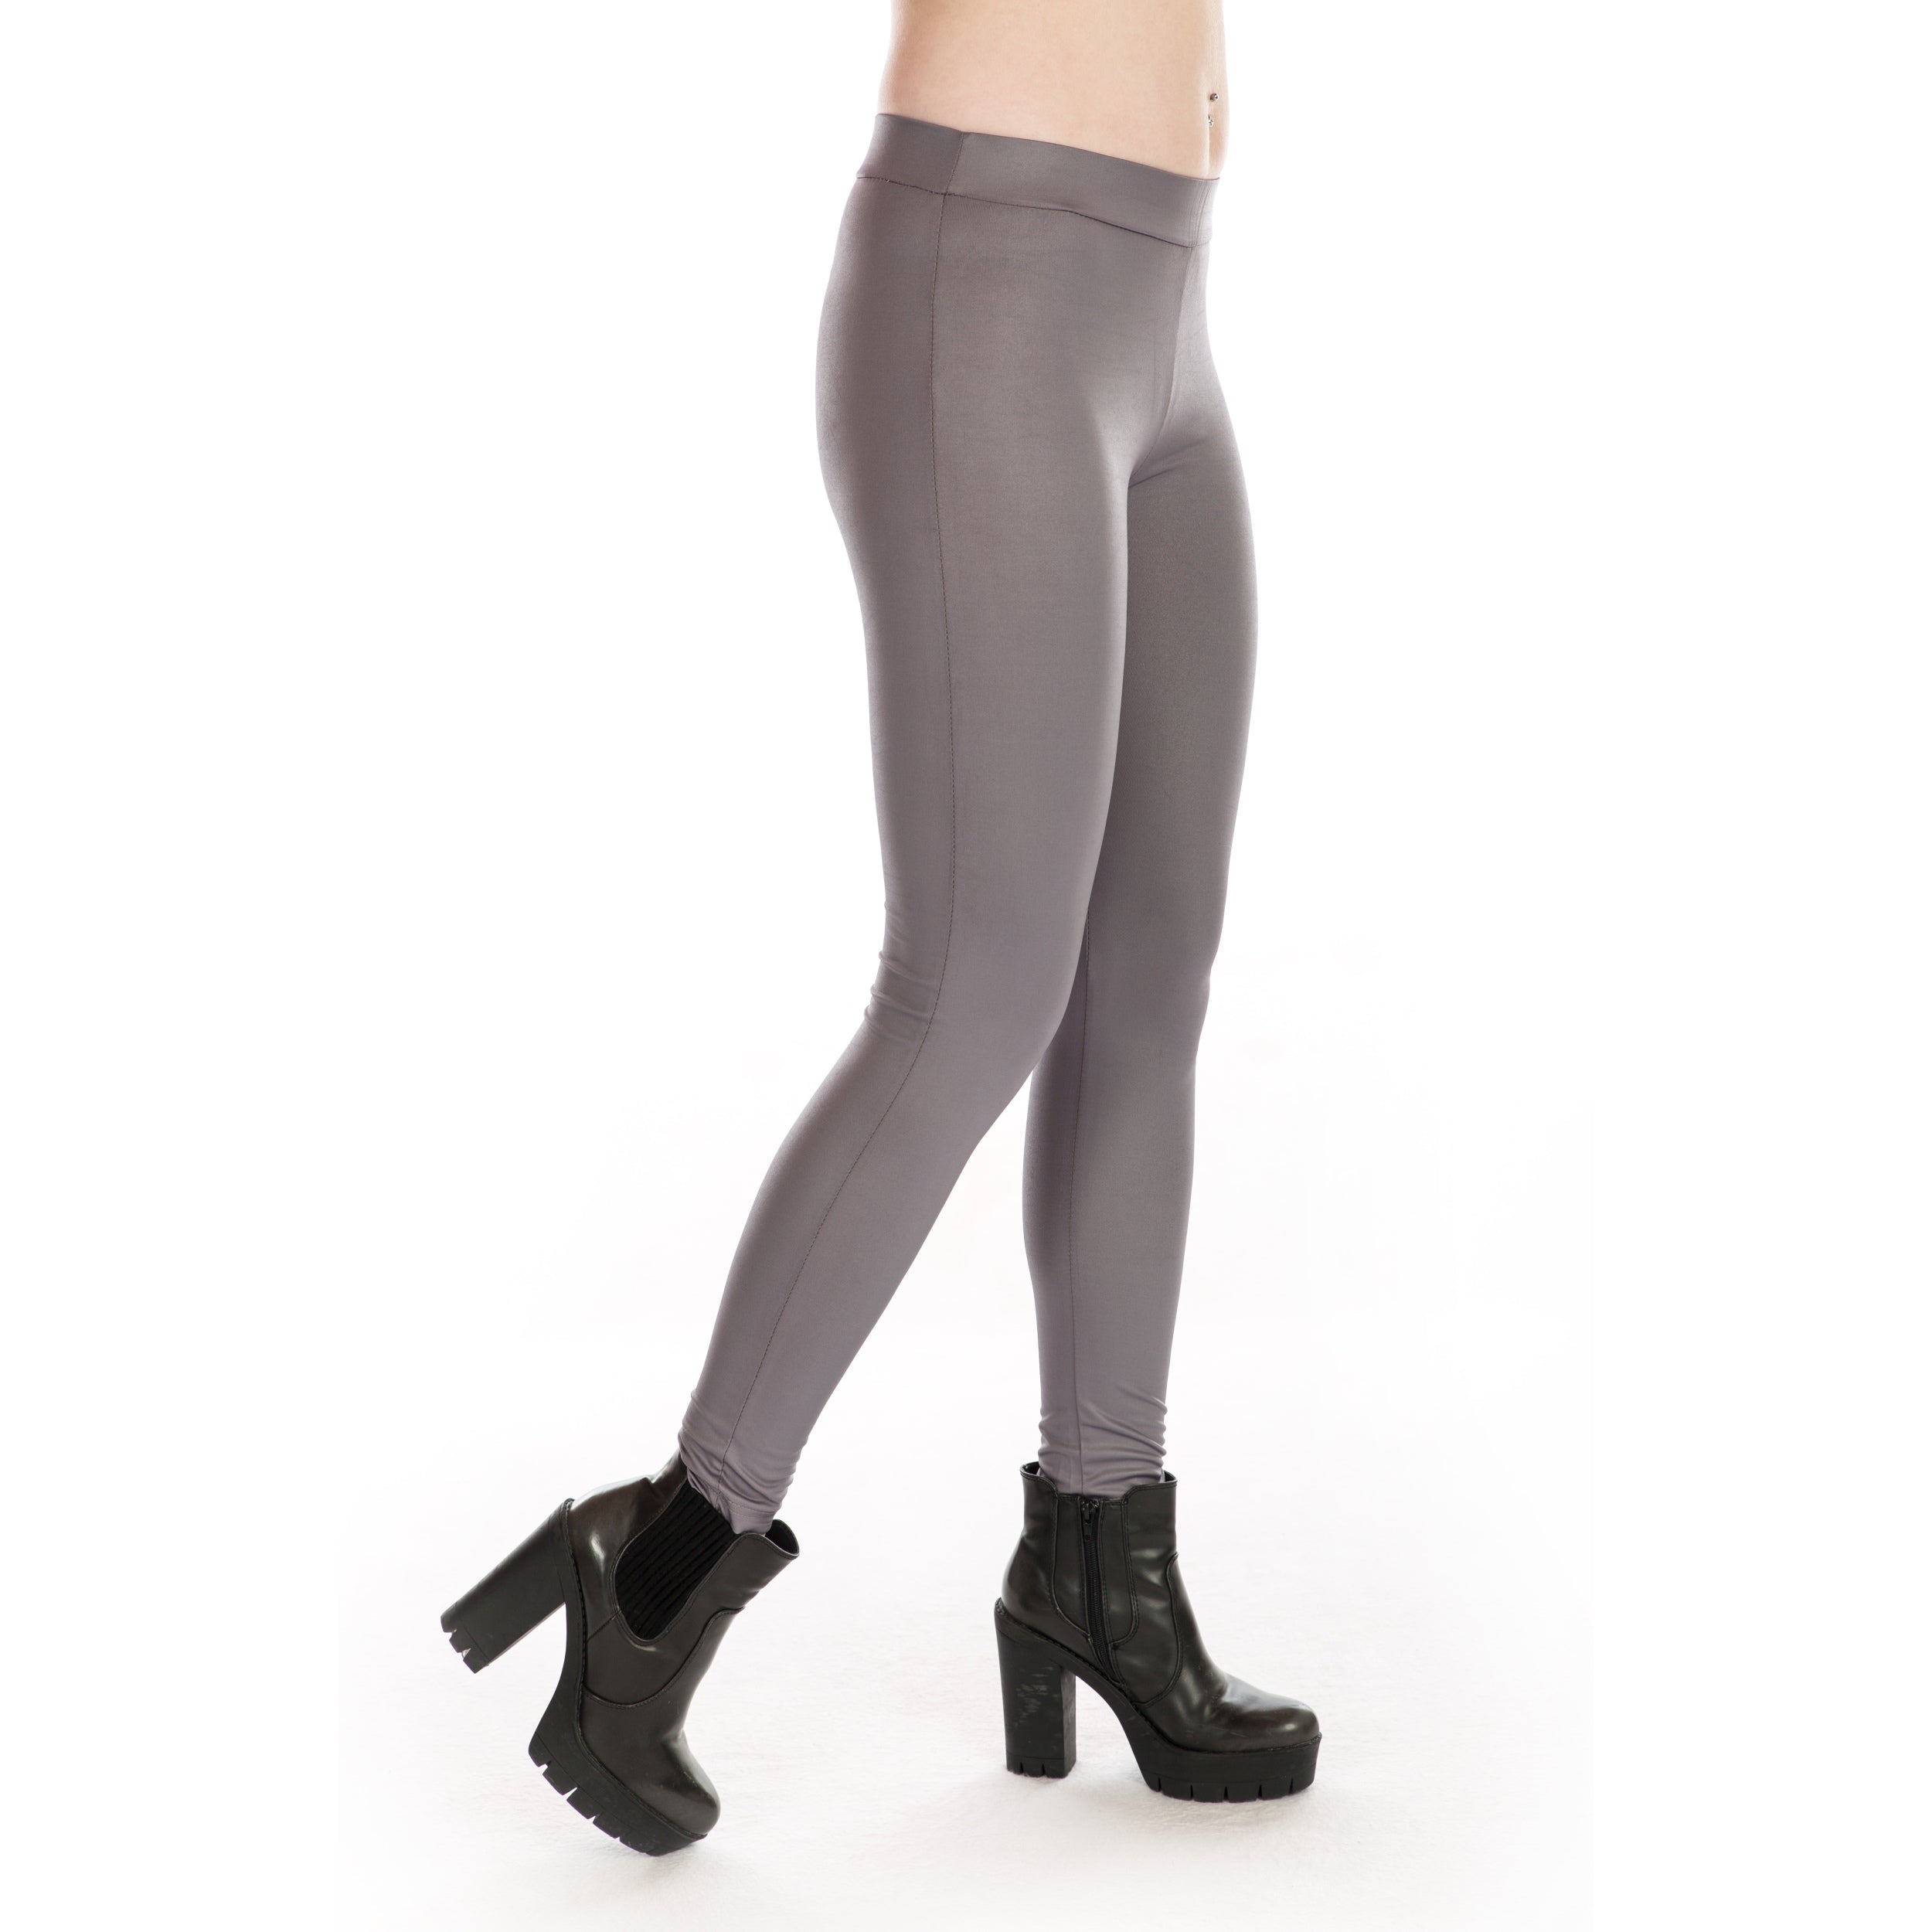 Rubberfashion Glanz Leggings Damen - Sexy low waist - Hose Hüft Leggins für Damen Frauen